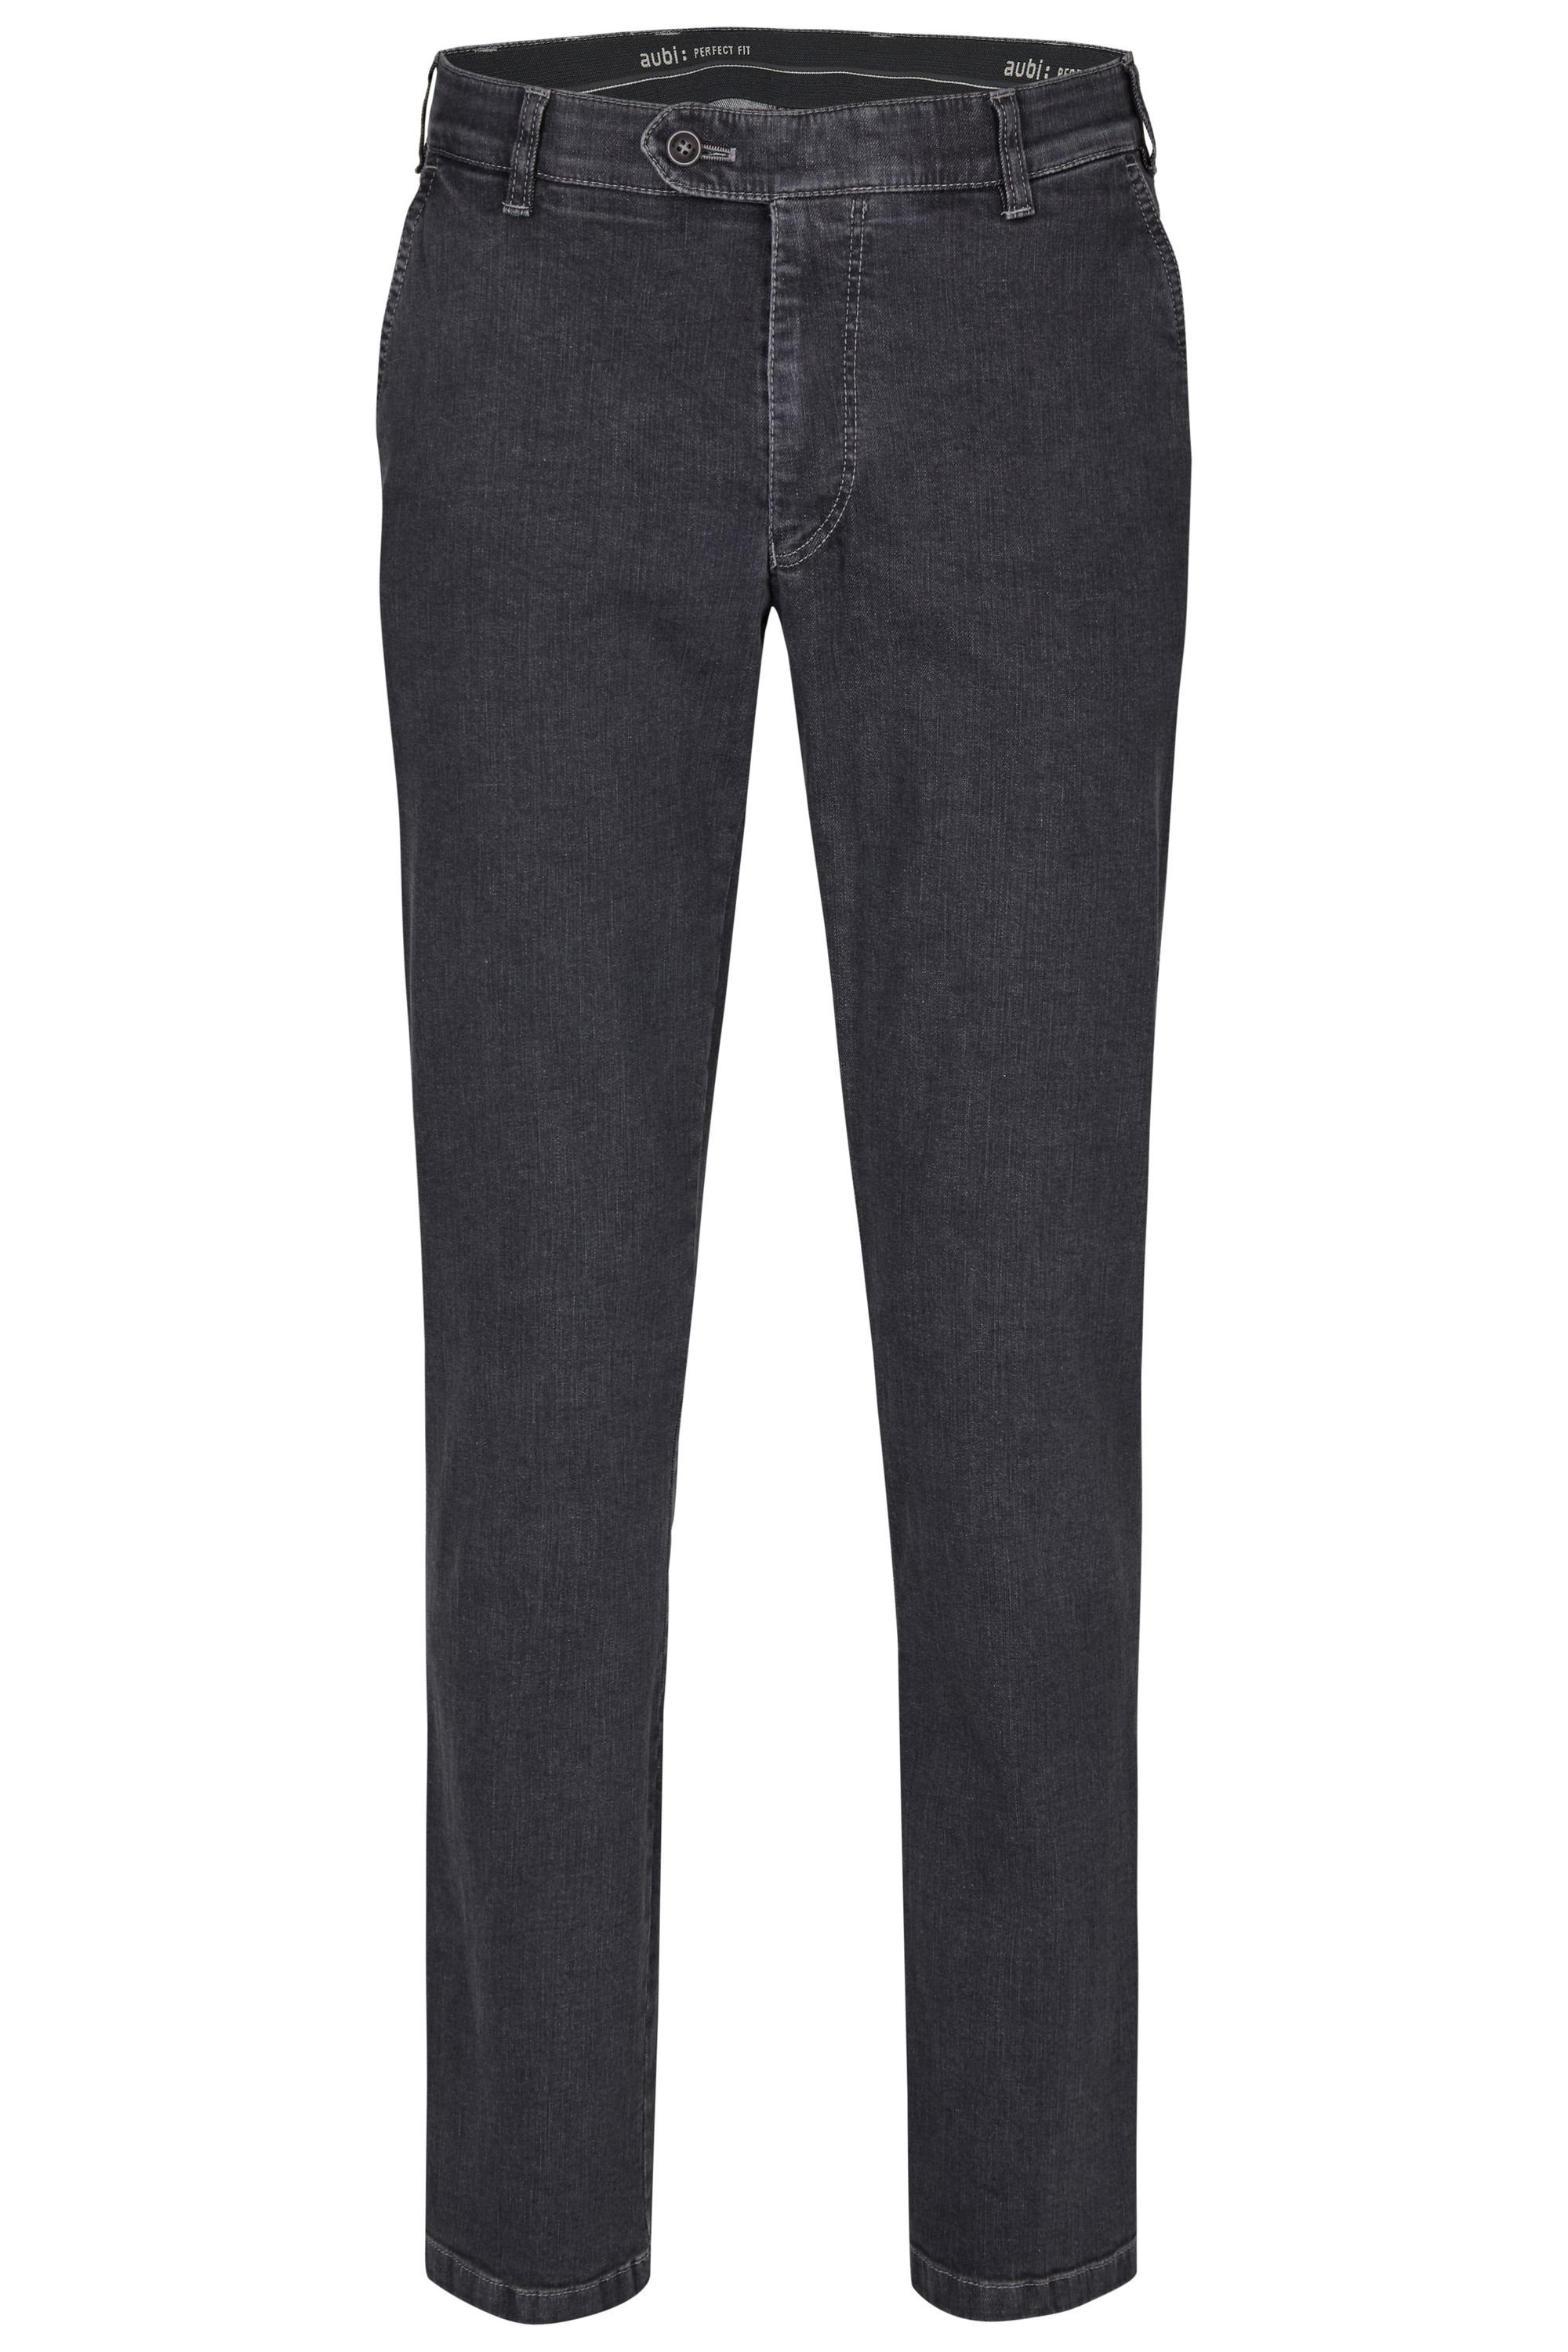 aubi: Bequeme Jeans aubi Perfect Fit Herren Jeans Hose Stretch aus Baumwolle High Flex Modell 526 grey (51)